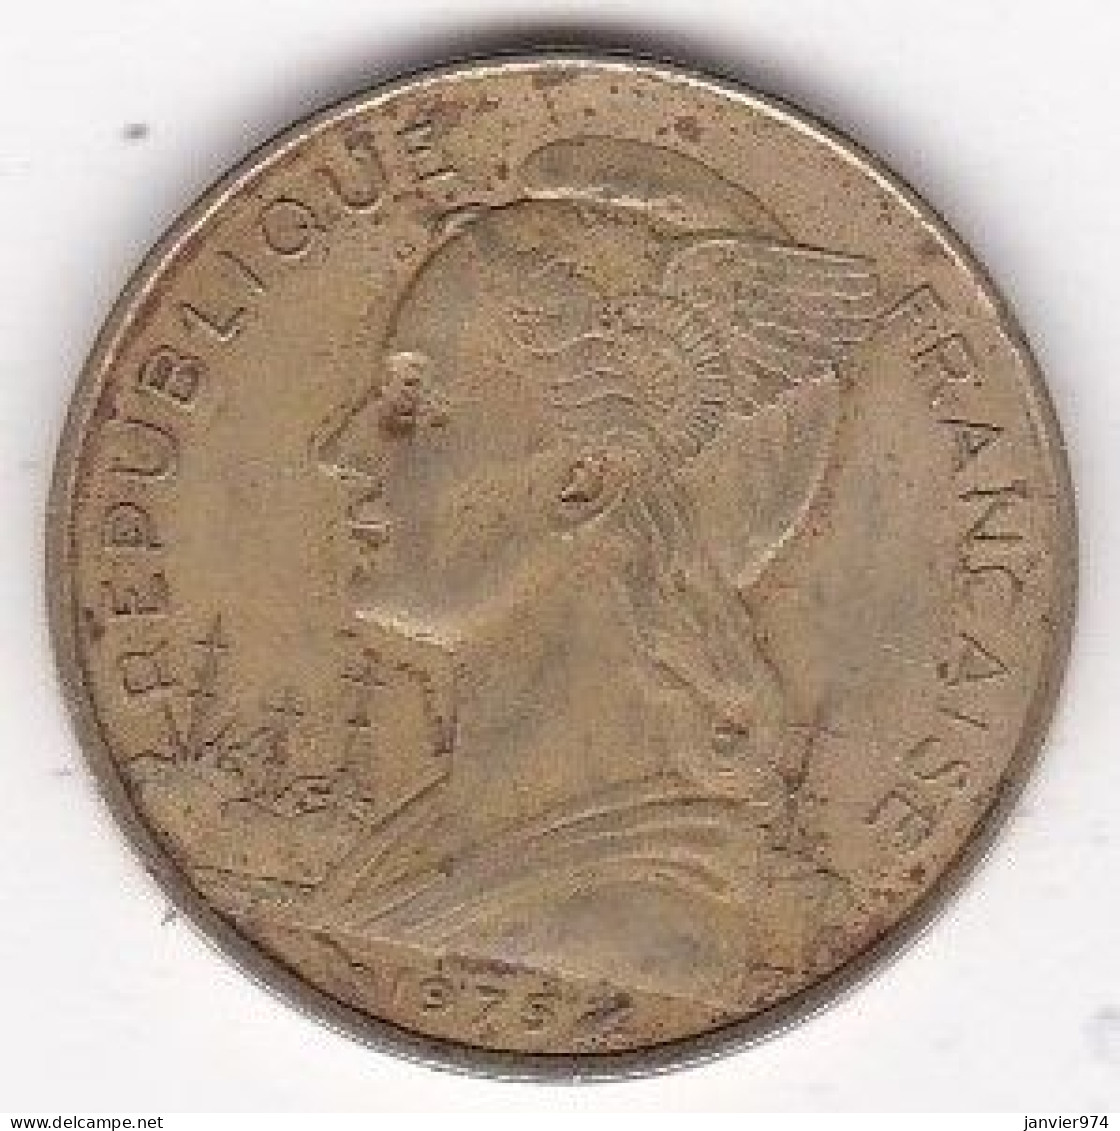 Territoire Français Des Afars Et Issas. 20 Francs 1975, Bronze Aluminium, Lec# 66 - Djibouti